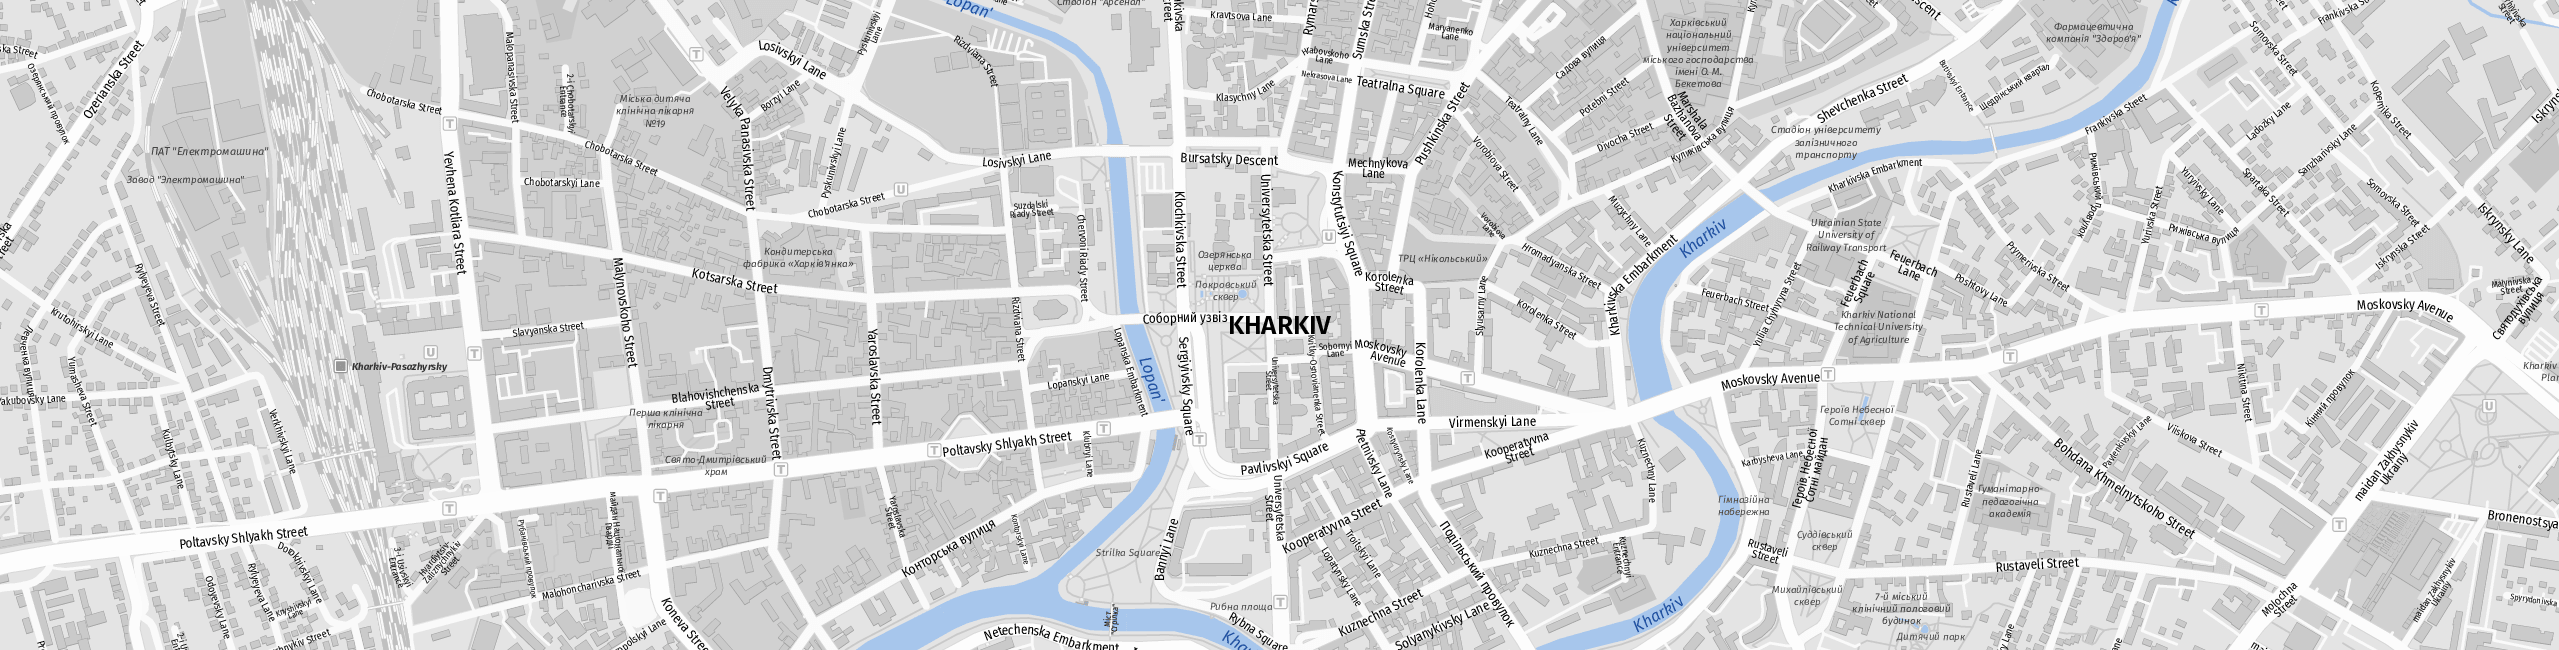 Stadtplan Kharkiv zum Downloaden.